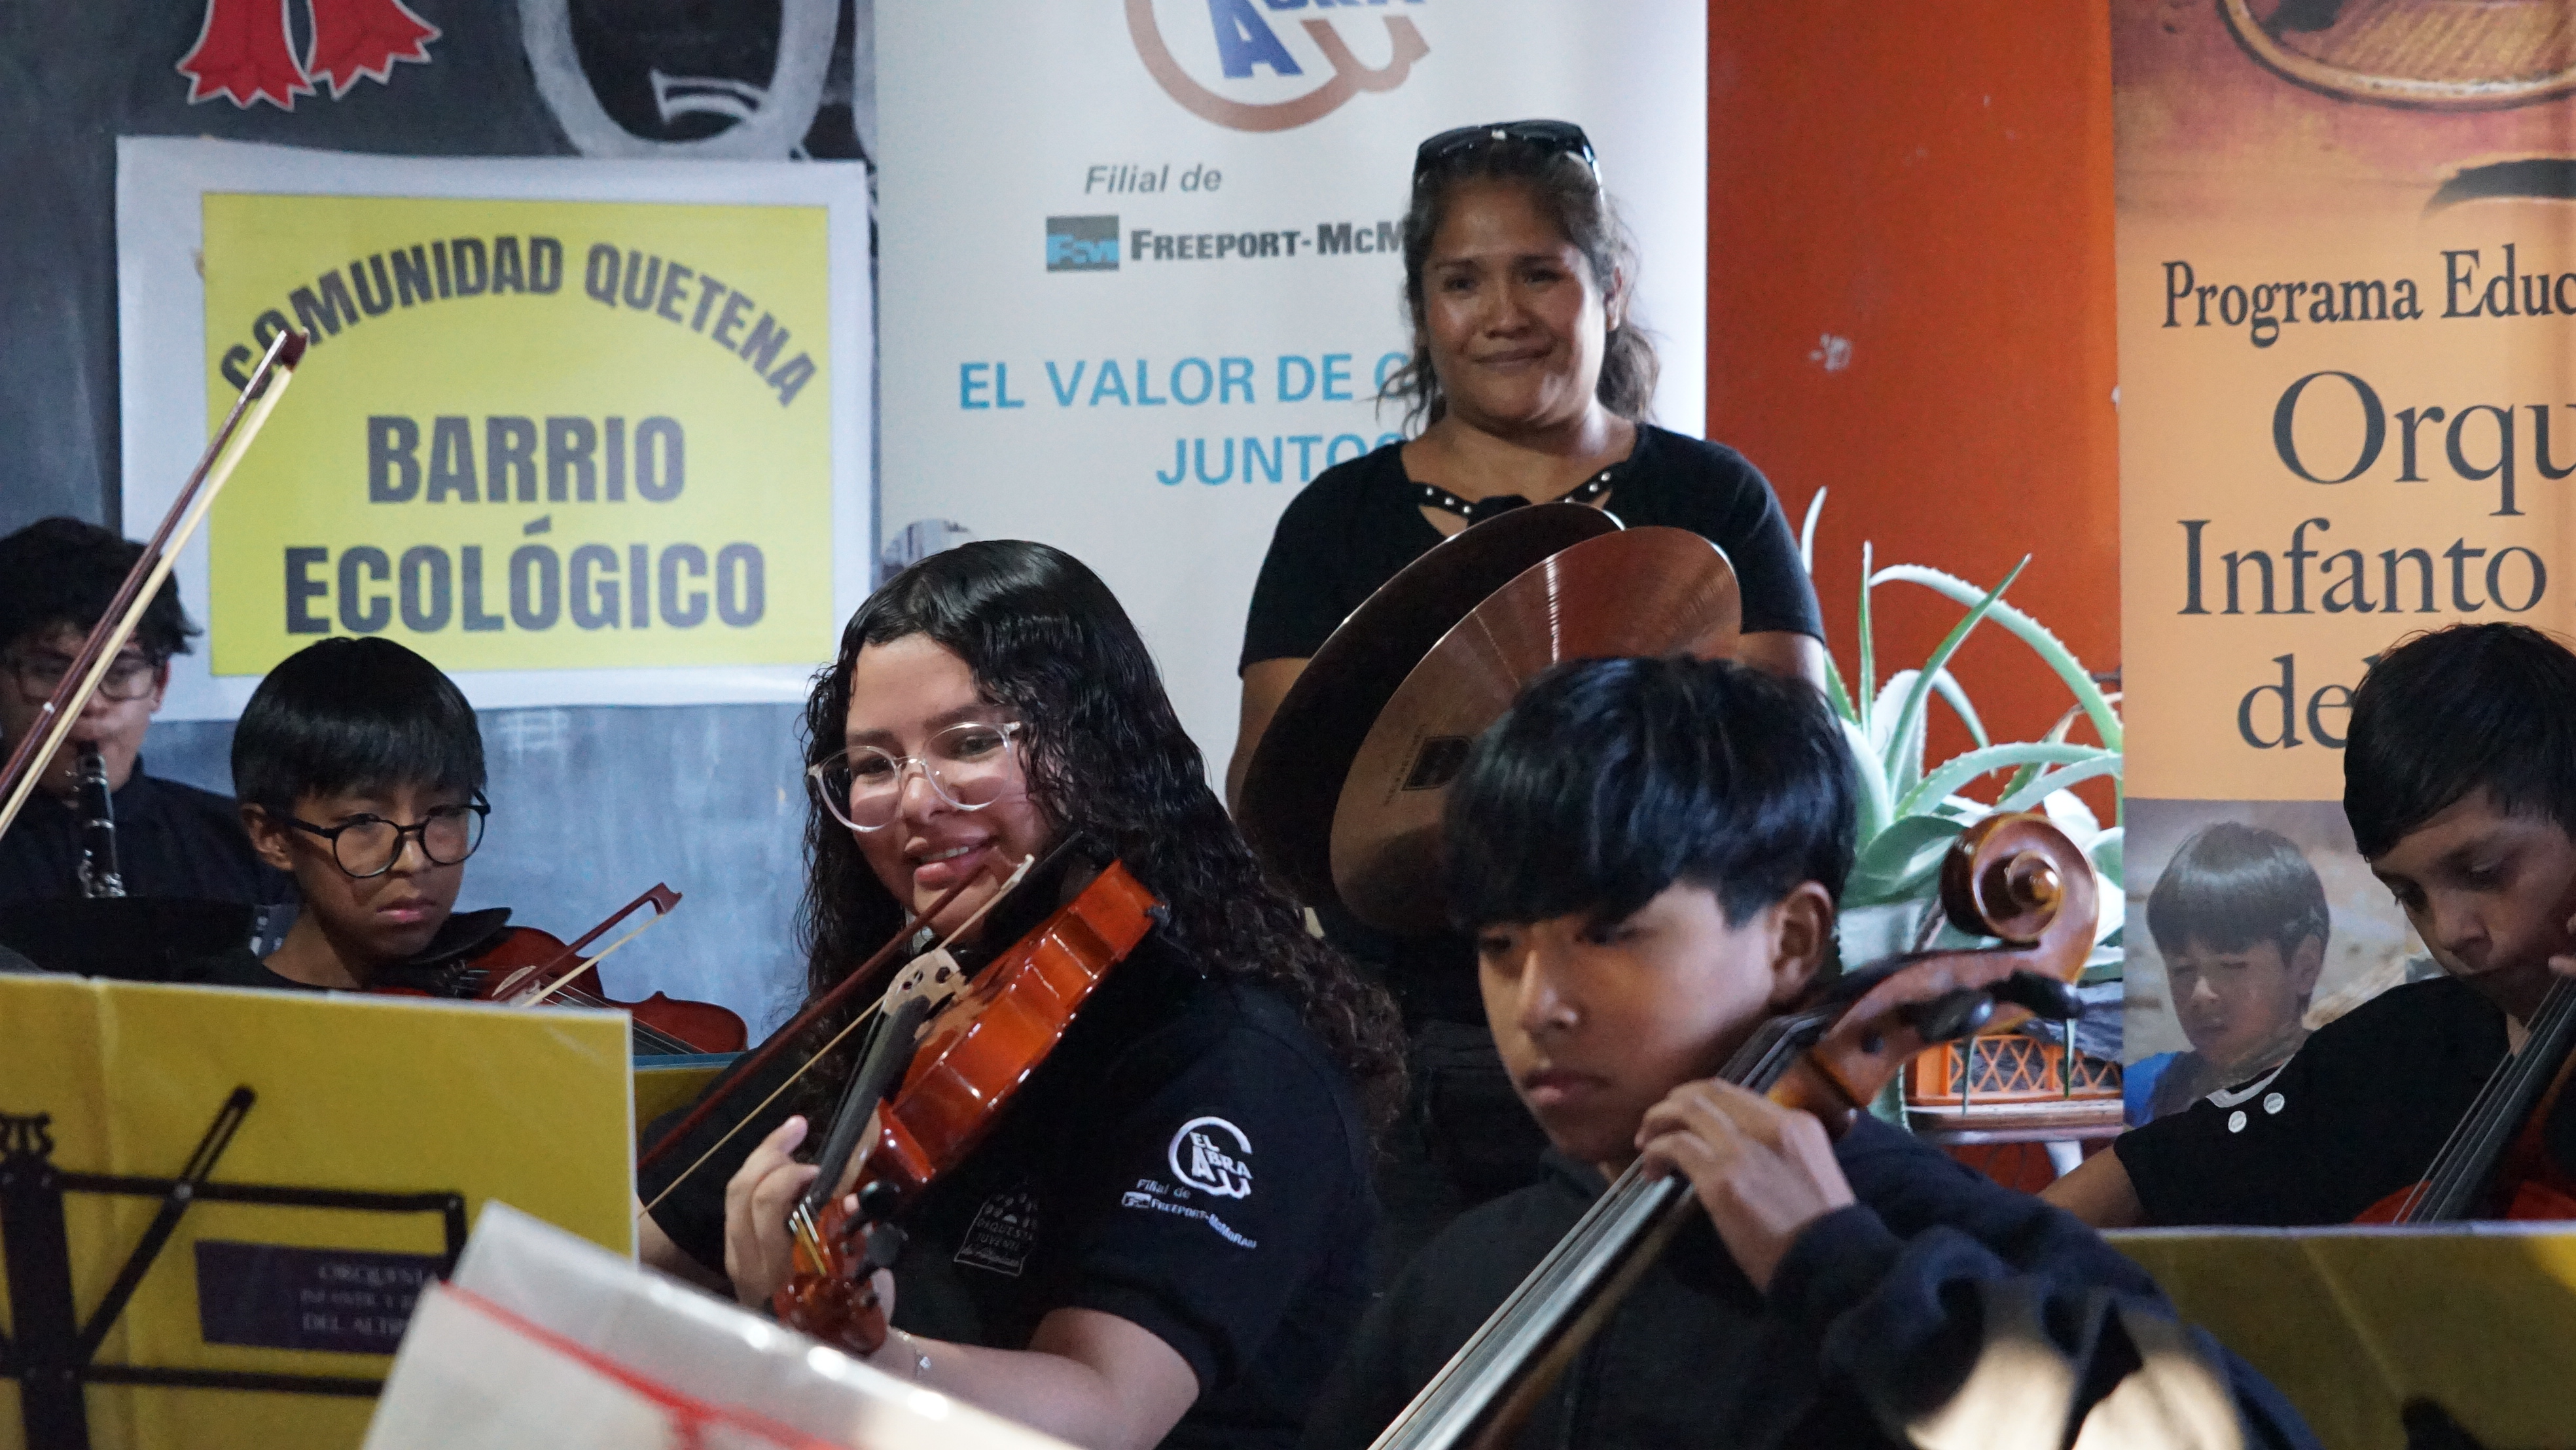 Orquesta Infanto-Juvenil del Altiplano realizó 4 conciertos para comunidades